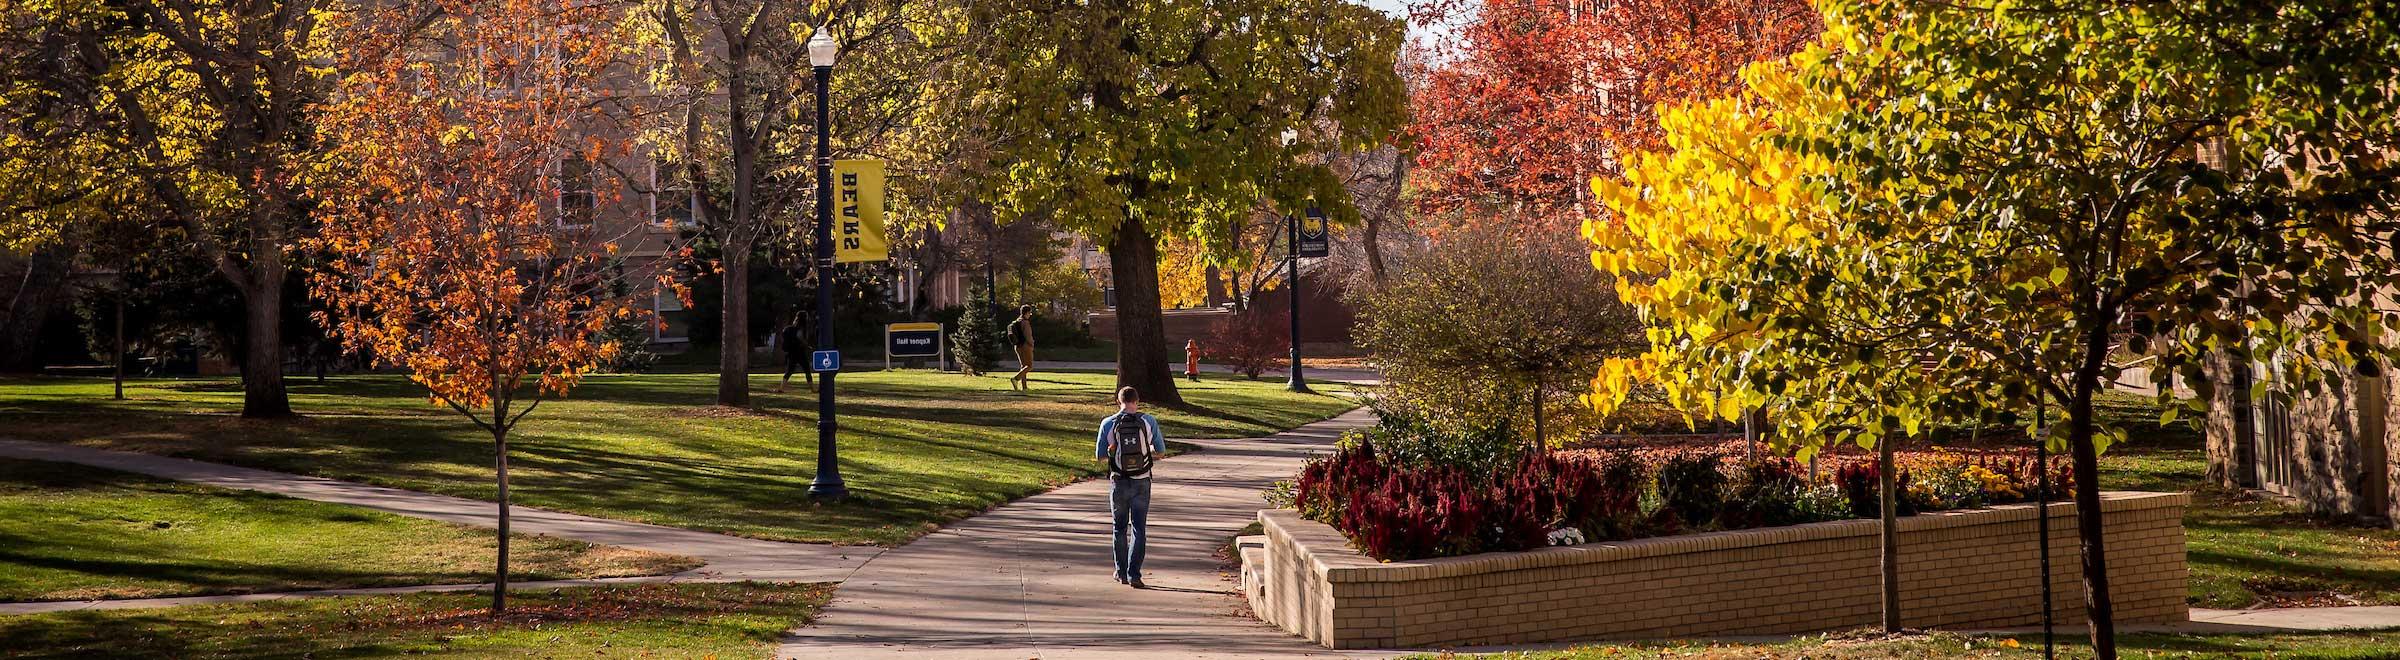 University of Northern Colorado Campus